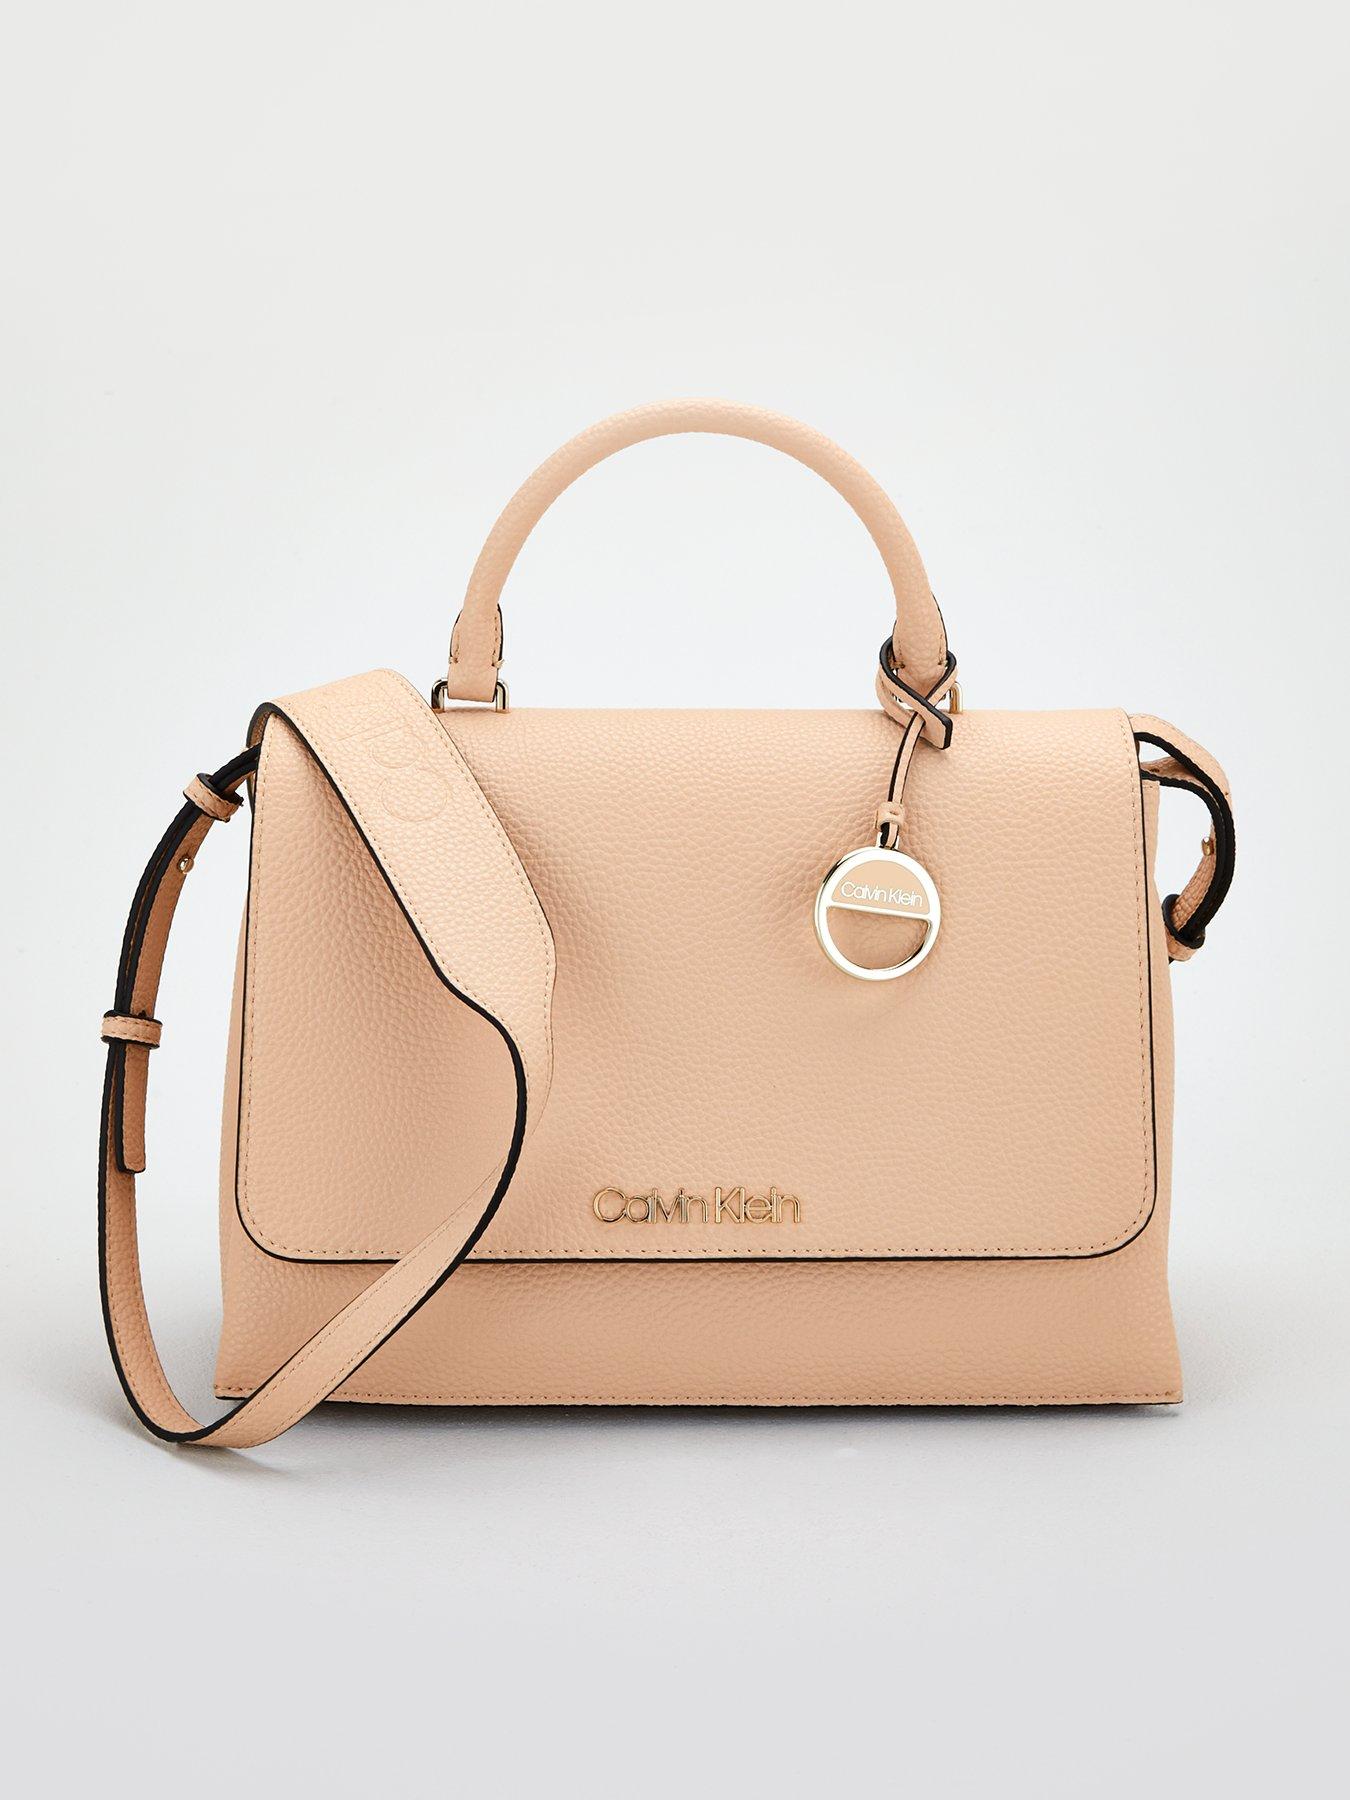 Calvin klein | Bags \u0026 purses | Women 